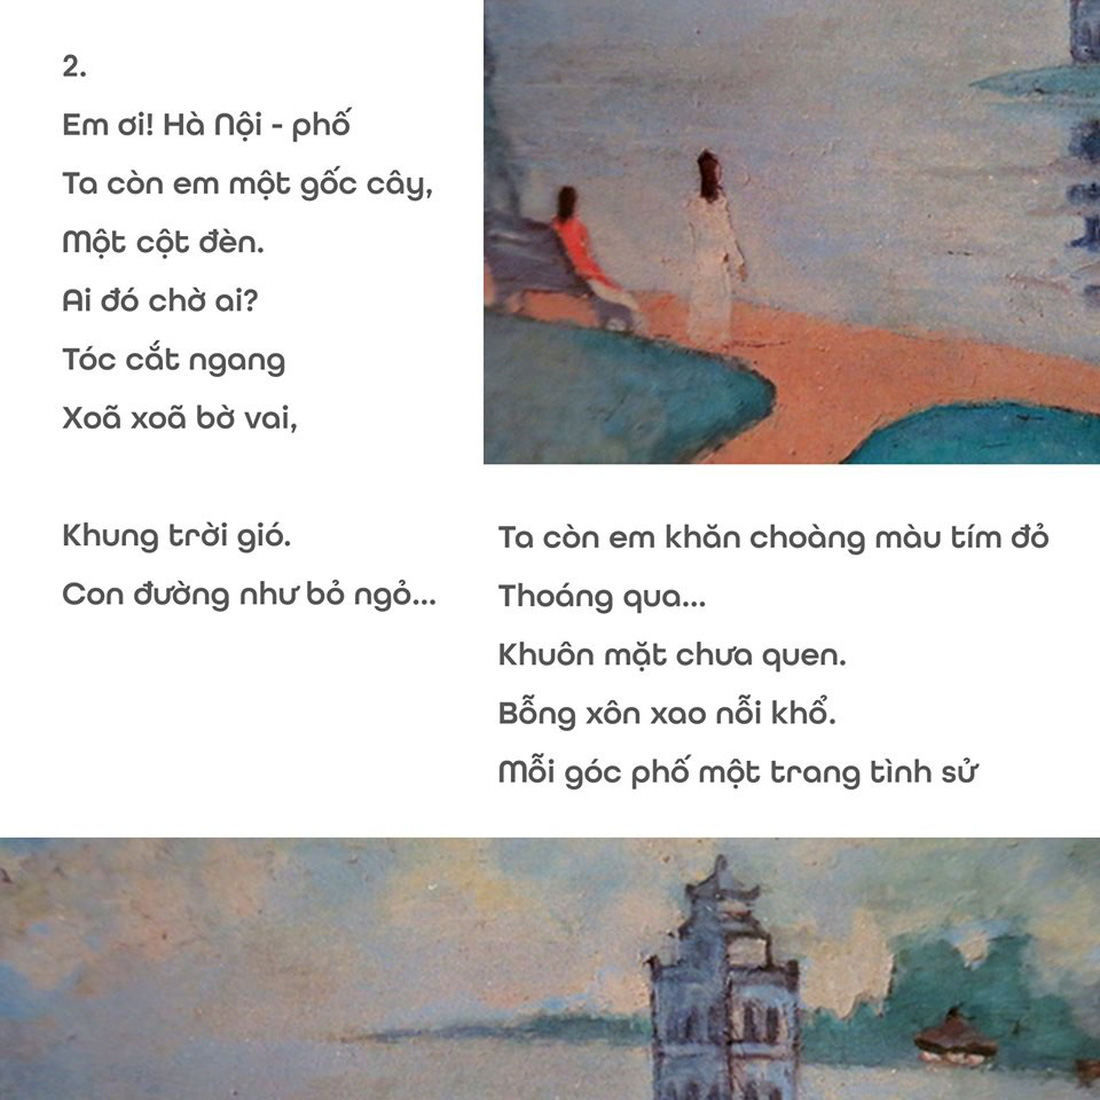 Đọc Hà Nội phố của Phan Vũ trên nền tranh Phố Phái - Ảnh 4.